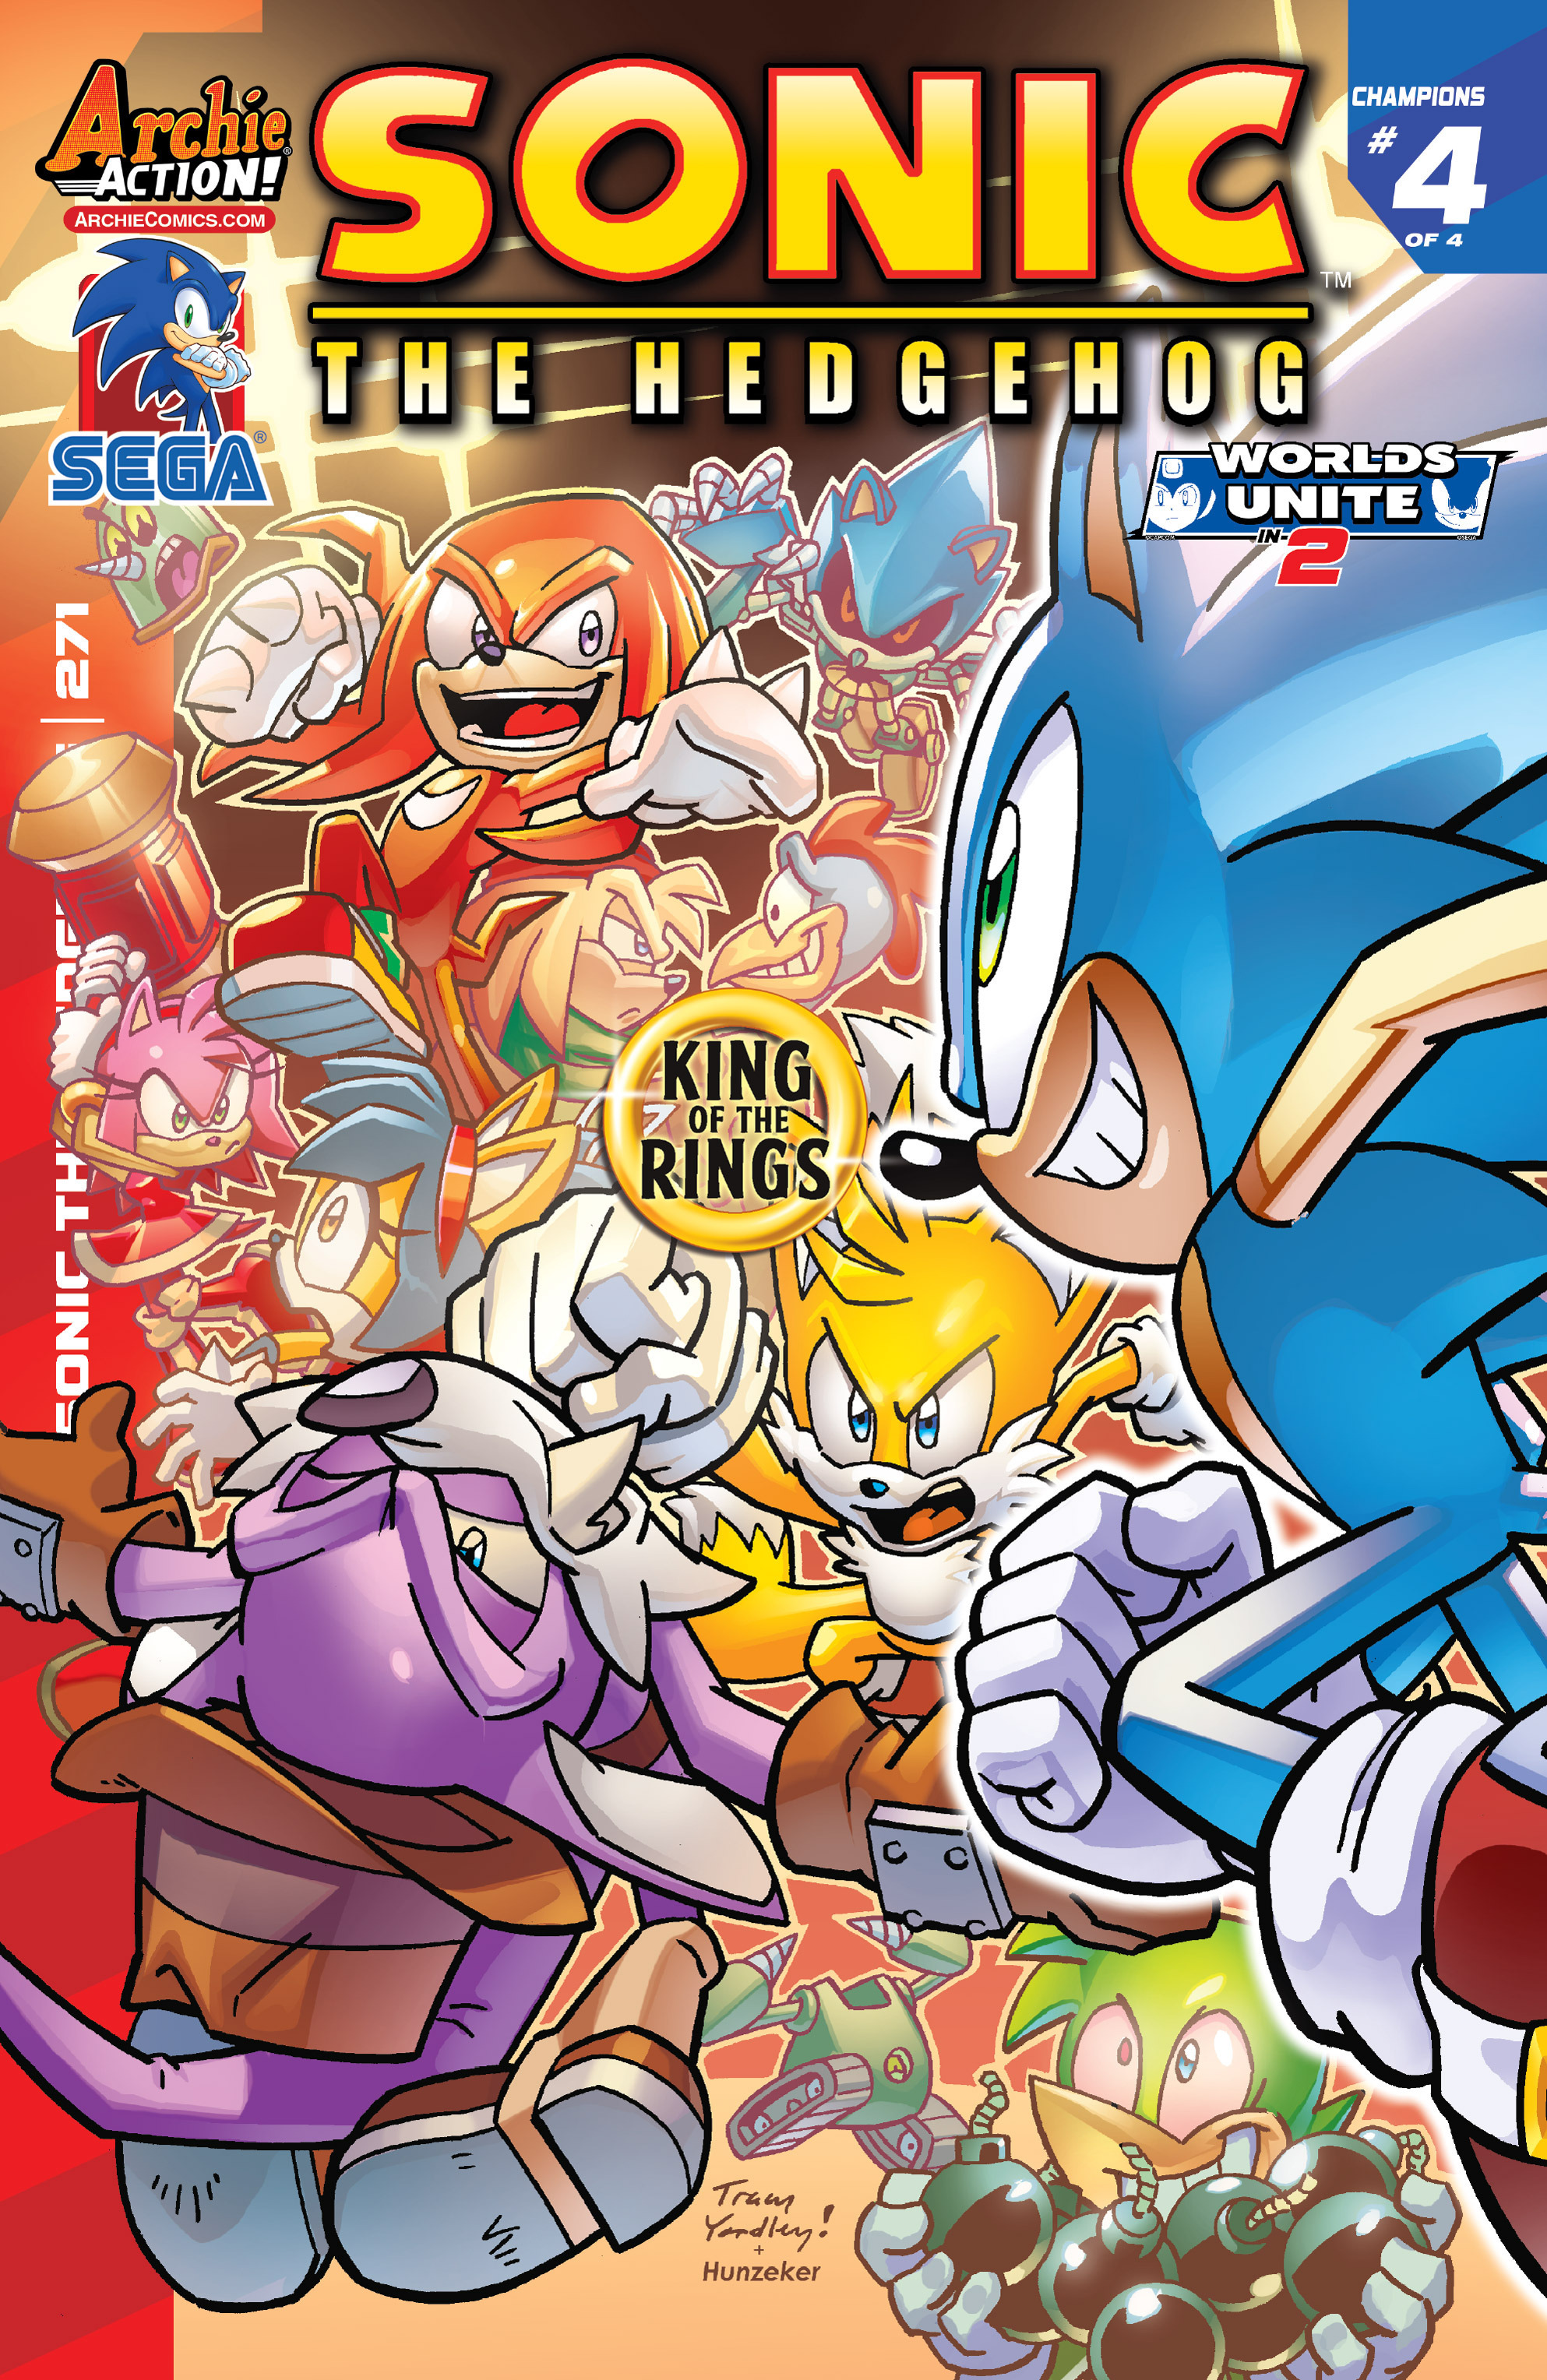 Sonic archie comics read online